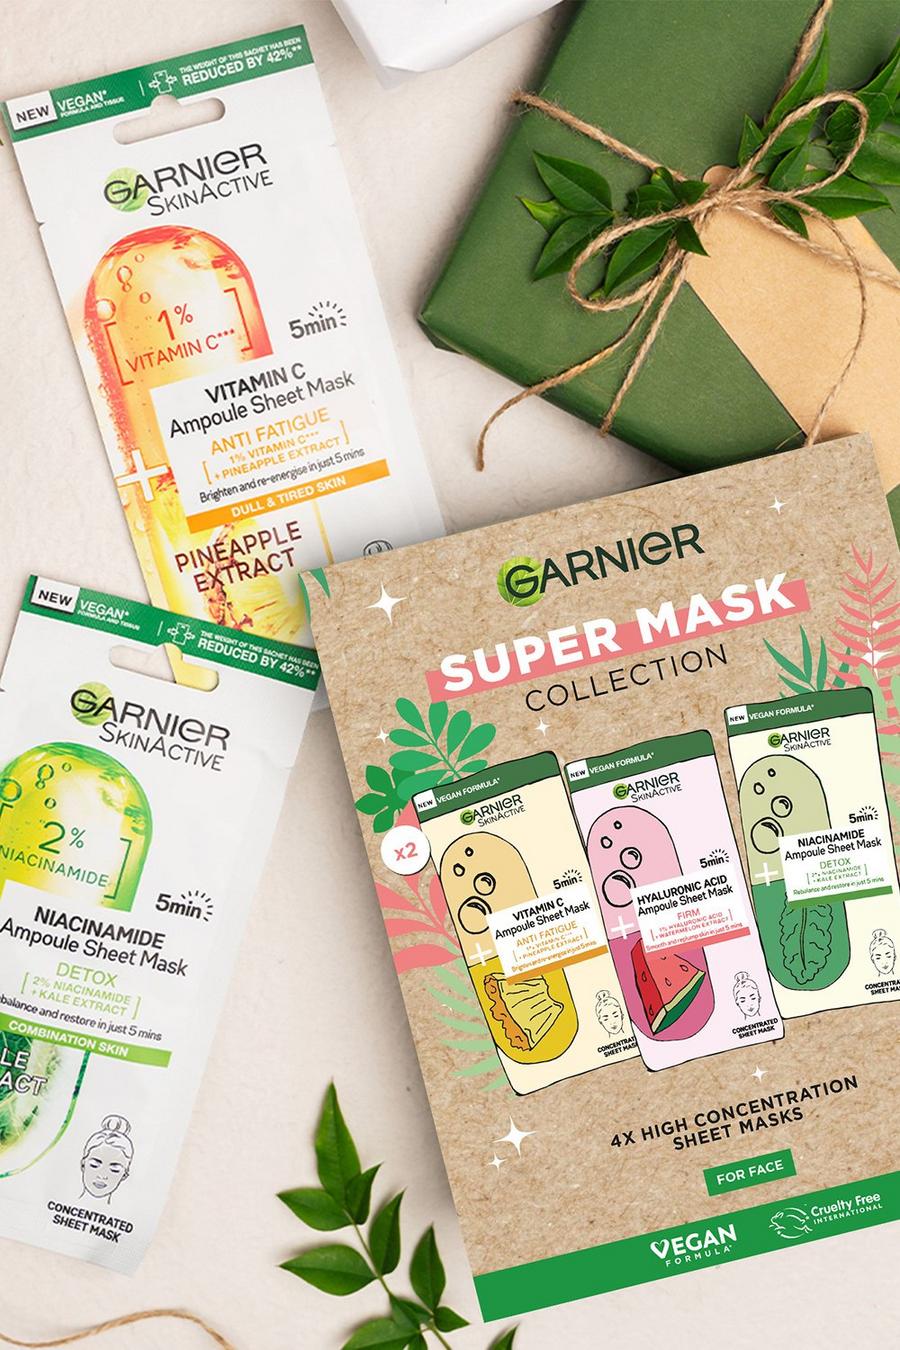 Green vert Garnier Super Mask Collection Gift Set